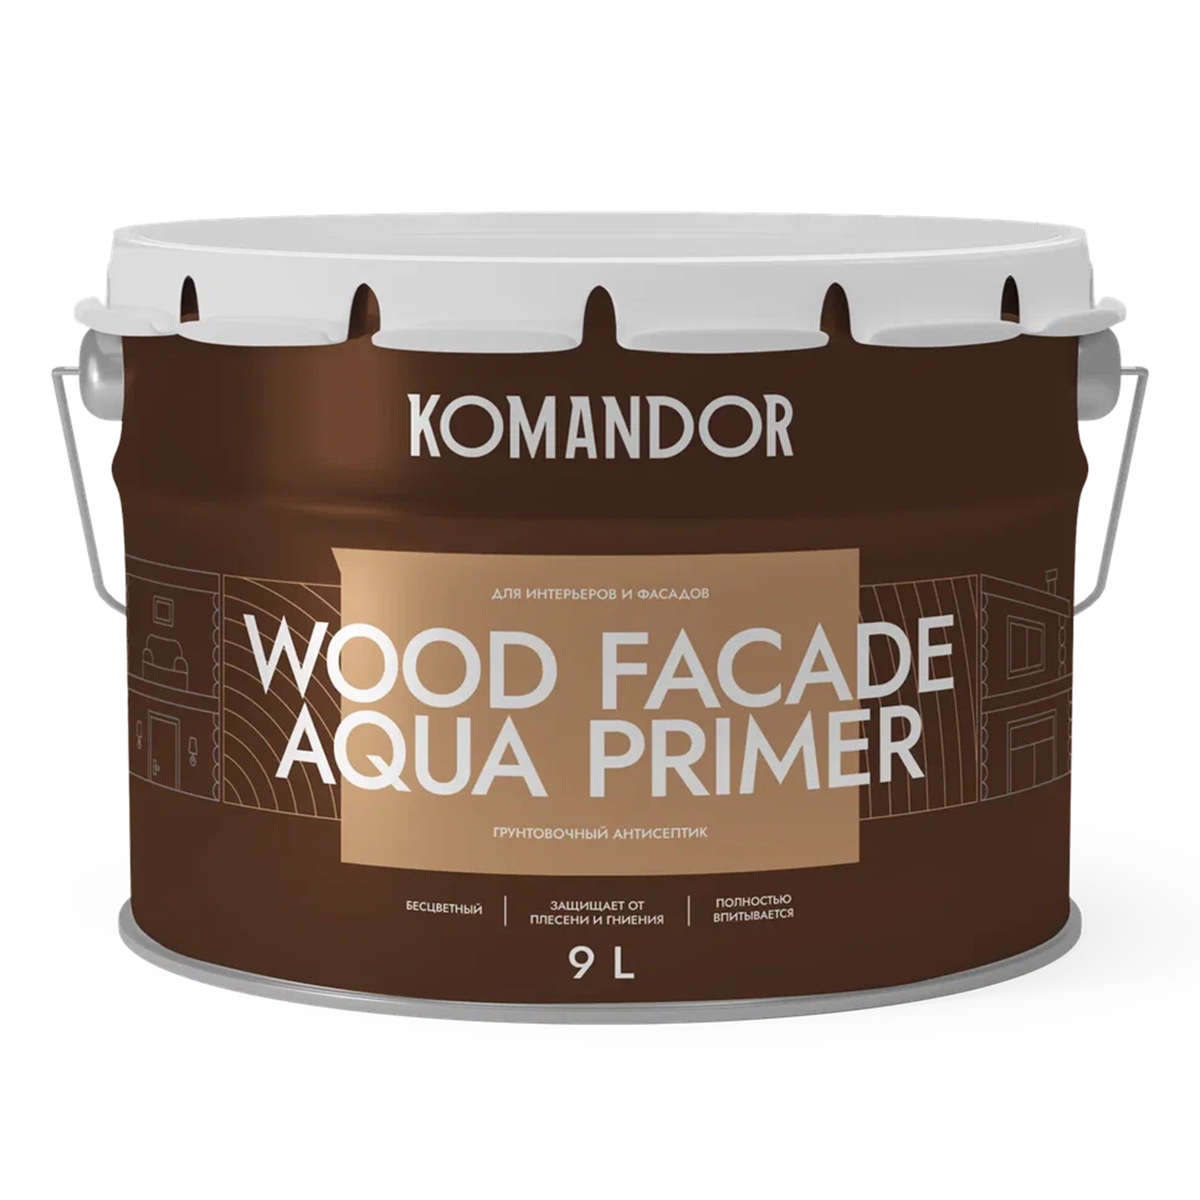 Грунт-антисептик для дерева Komandor Wood Facade Aqua Primer, 9 л